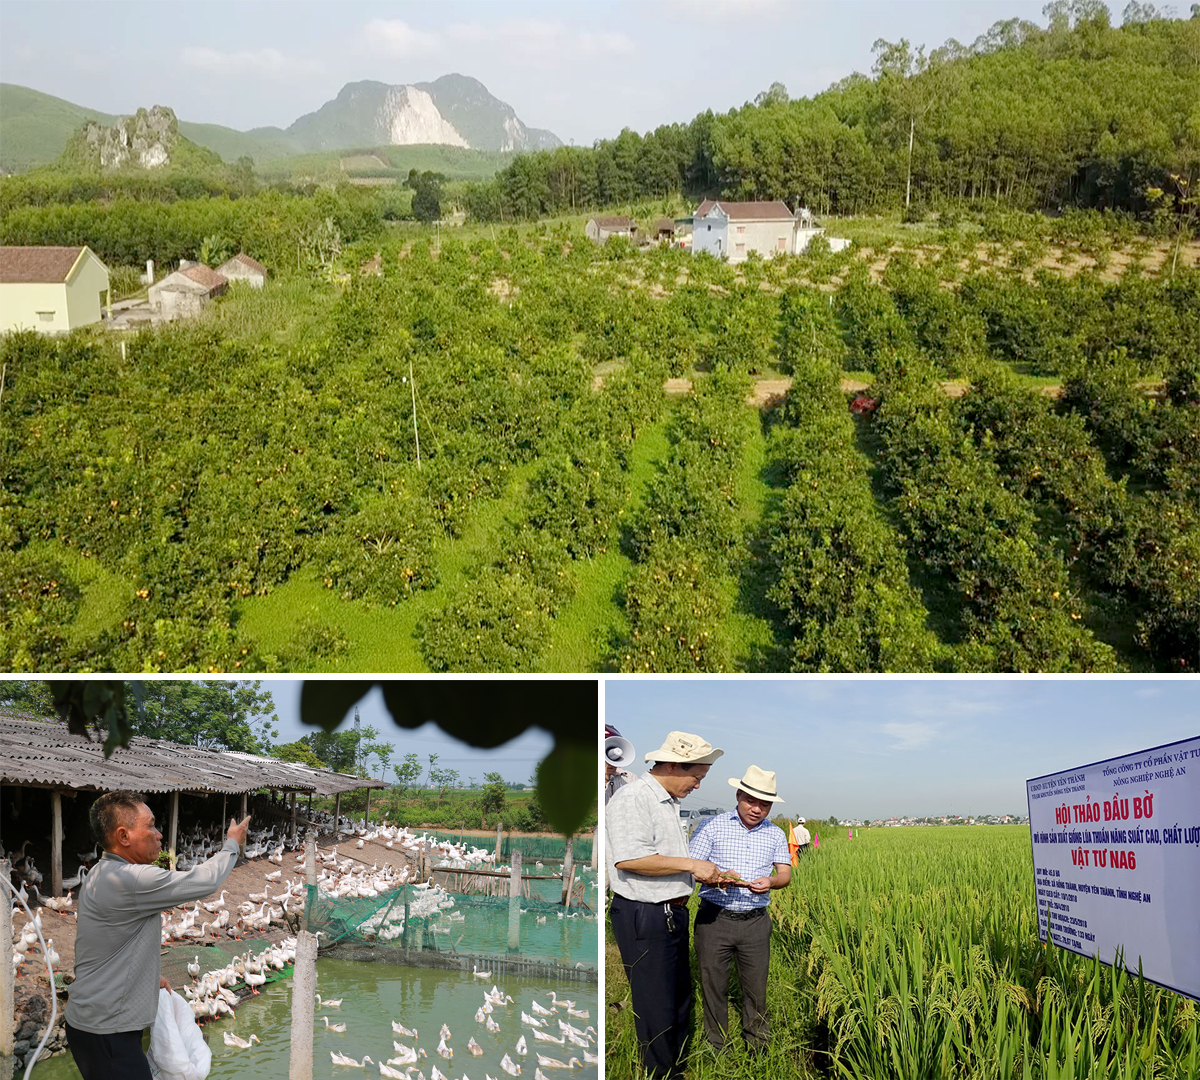 Hình thành nhiều trang trại trồng cam, tạo thương hiệu cam Yên Thành; Các mô hình chăn nuôi trang trại đảm bảo vệ sinh môi trường; Liên kết sản xuất 2000 ha lúa chất lượng cao.